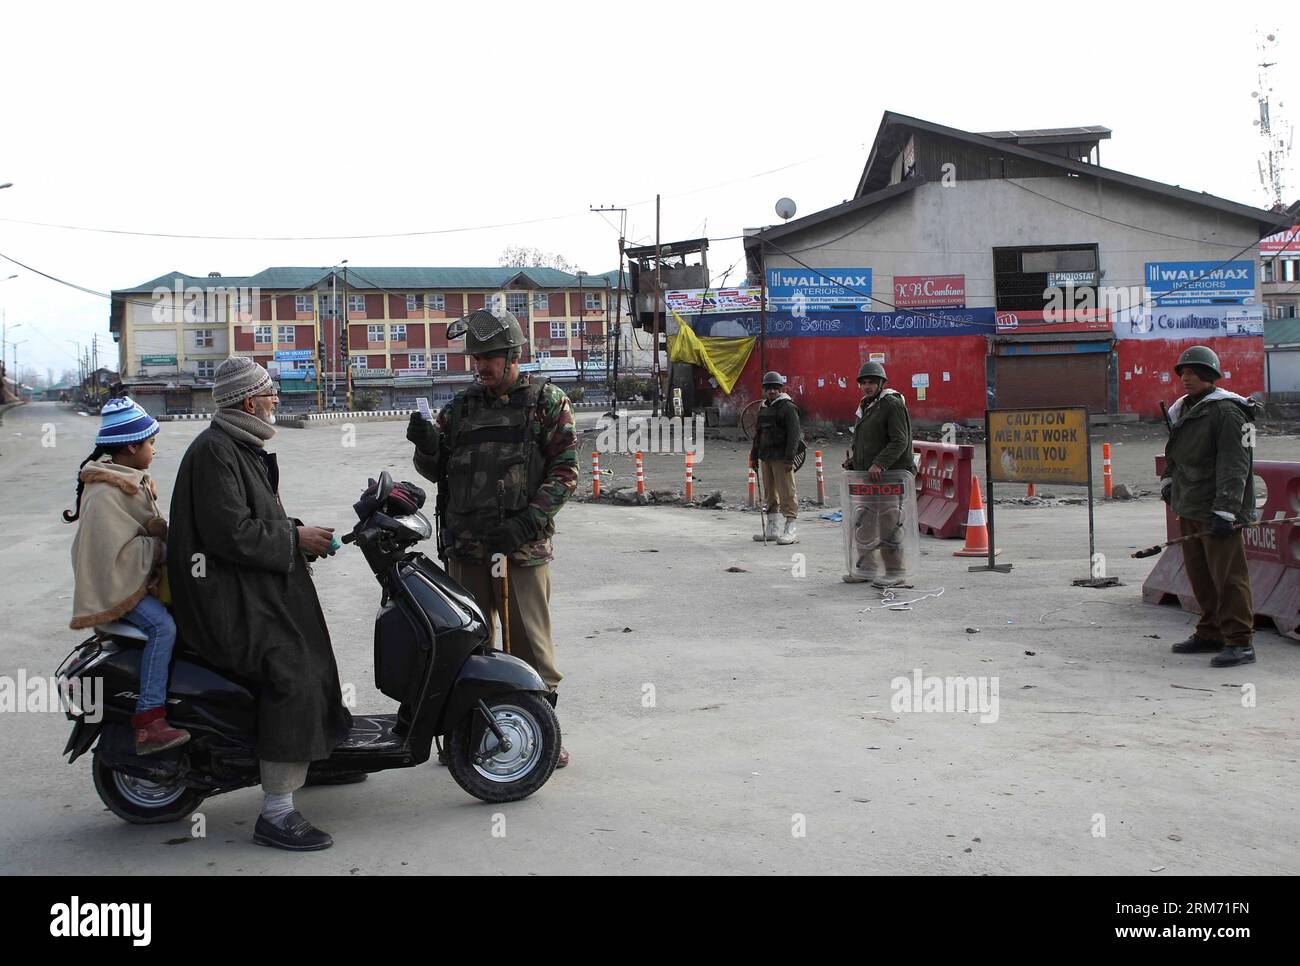 (140209) -- SRINAGAR, 9 Feb. 2014 (Xinhua) -- un equipaggio paramilitare indiano controlla la carta di un uomo vicino a una barricata durante le restrizioni a Srinagar, la capitale estiva del Kashmir controllato dagli indiani, 9 Feb. 2014. Le autorità domenica hanno imposto restrizioni nelle aree dominate dai musulmani del Kashmir controllato dagli indiani per prevenire proteste e scontri nel primo anniversario dell'esecuzione di Mohammed Afzal Guru condannato per attacco al parlamento indiano, hanno detto i funzionari. (Xinhua/Javed Dar) KASHMIR-SRINAGAR-PROTEST PUBLICATIONxNOTxINxCHN Srinagar 9 febbraio 2014 XINHUA a Indian paramilitary Trooper Checks Card of a Man Foto Stock